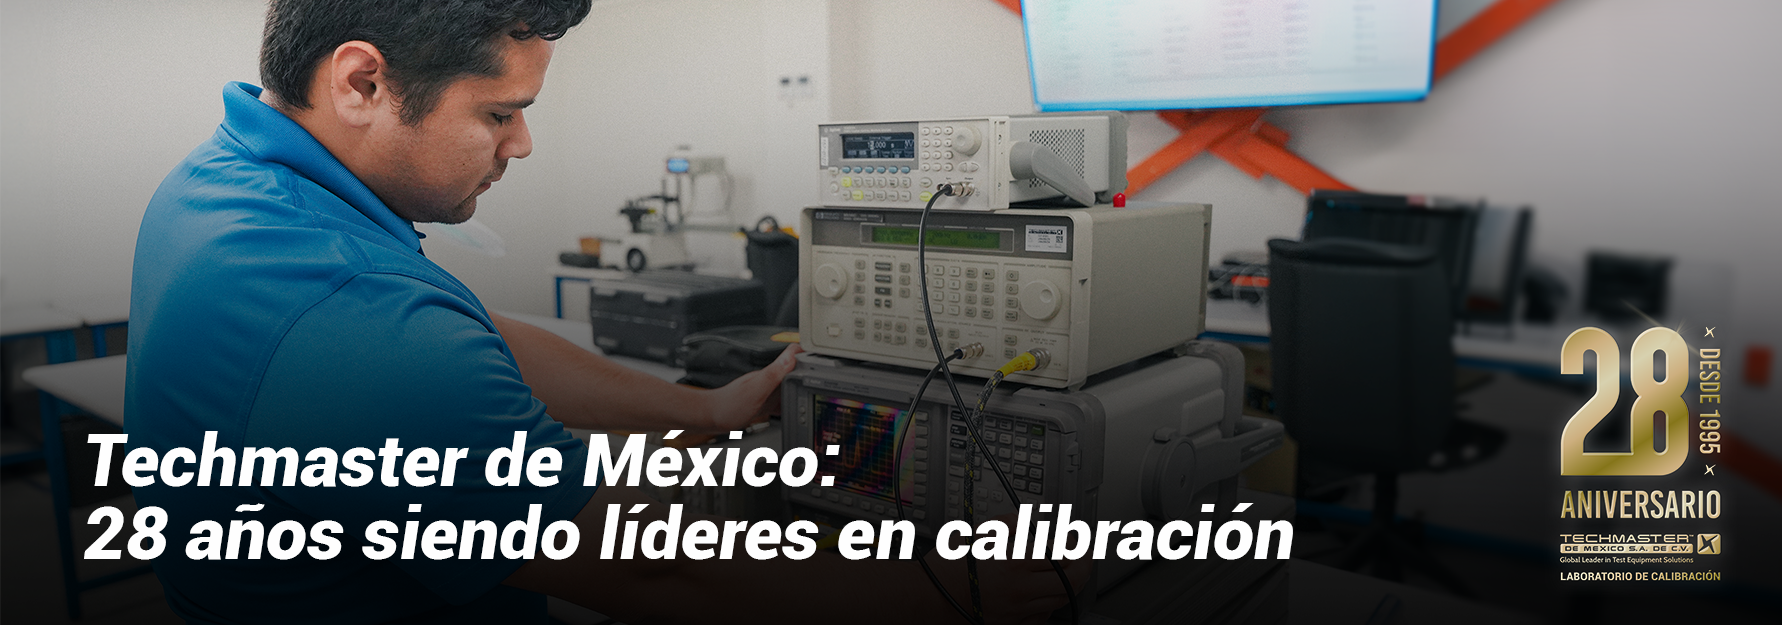 Techmaster de México: 28 años siendo líderes en calibración